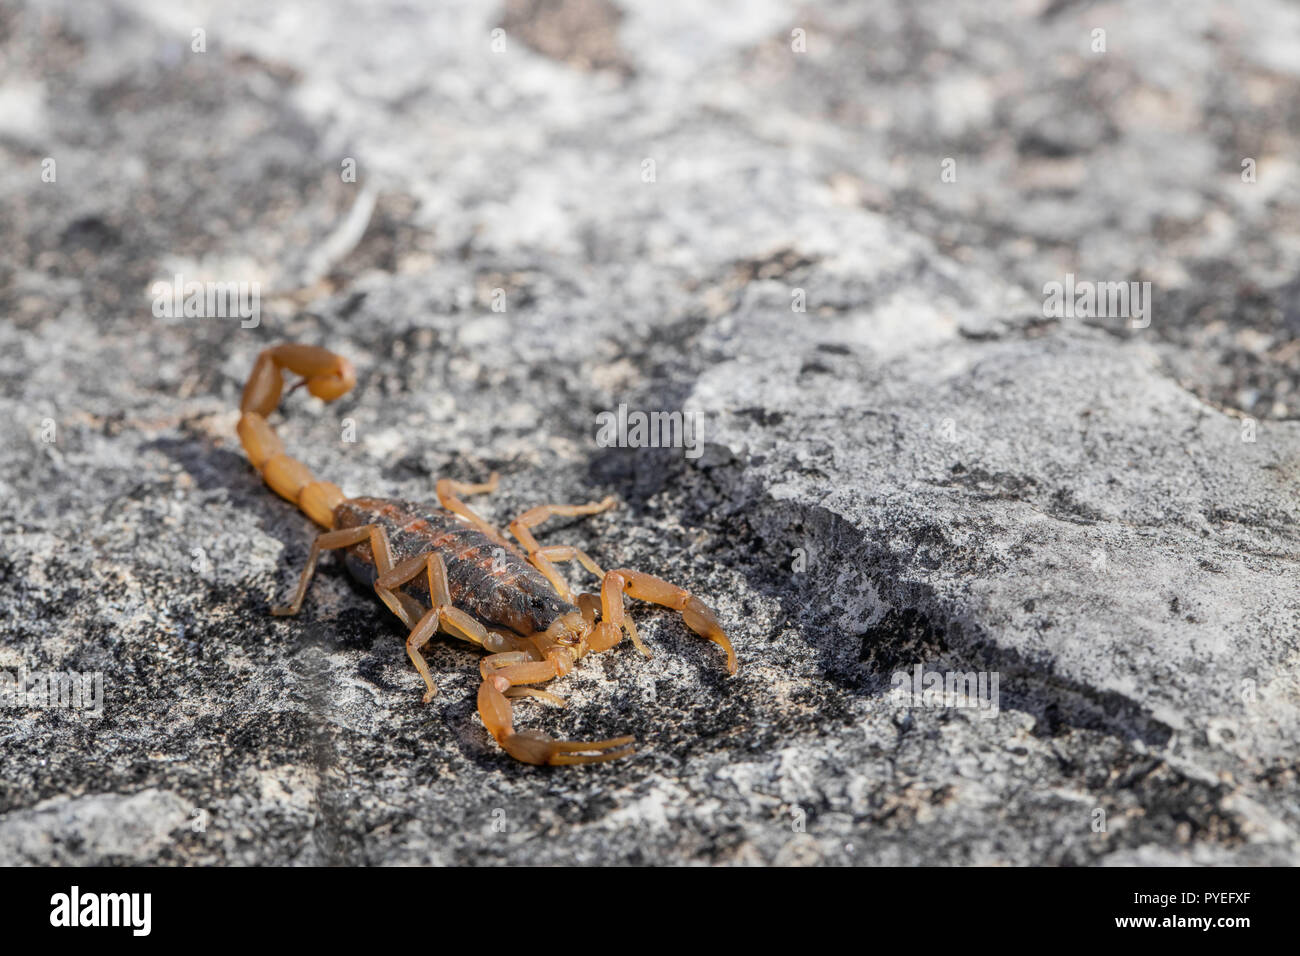 Striped bark scorpion - Centruroides vittatus Stock Photo